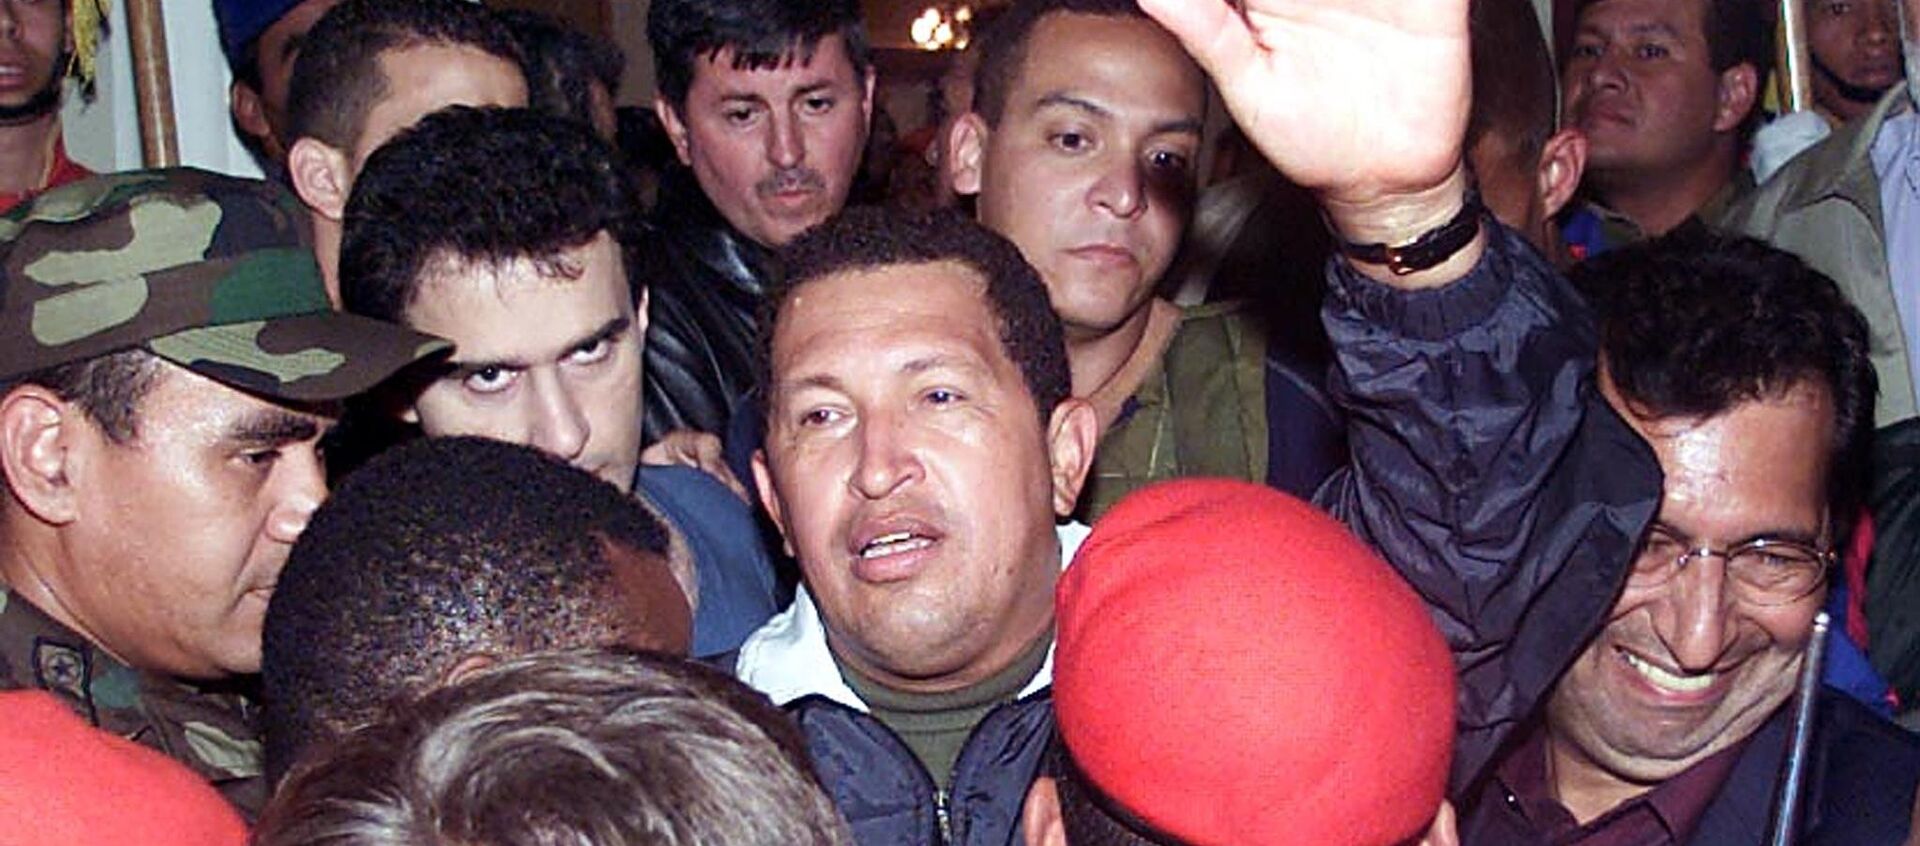 Hugo Chávez regresando al gobierno tras el fallido Golpe de Estado de 2002 en Venezuela - Sputnik Mundo, 1920, 14.04.2019